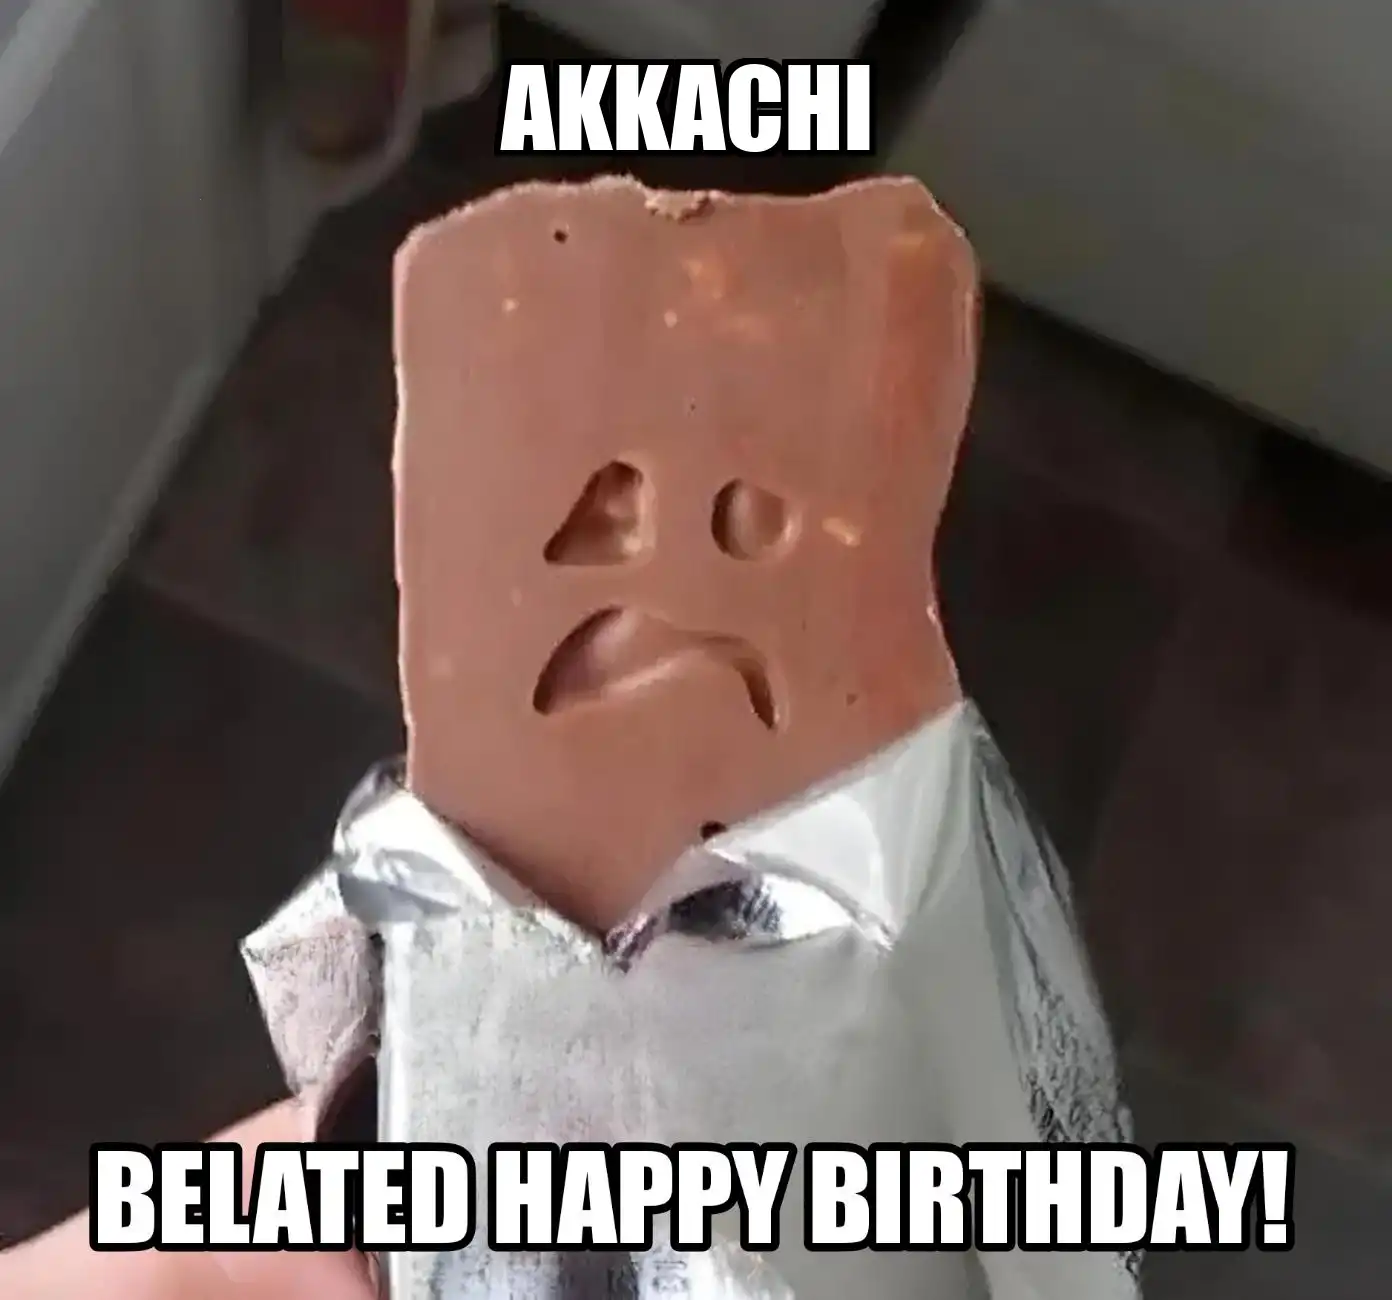 Happy Birthday Akkachi Belated Happy Birthday Meme